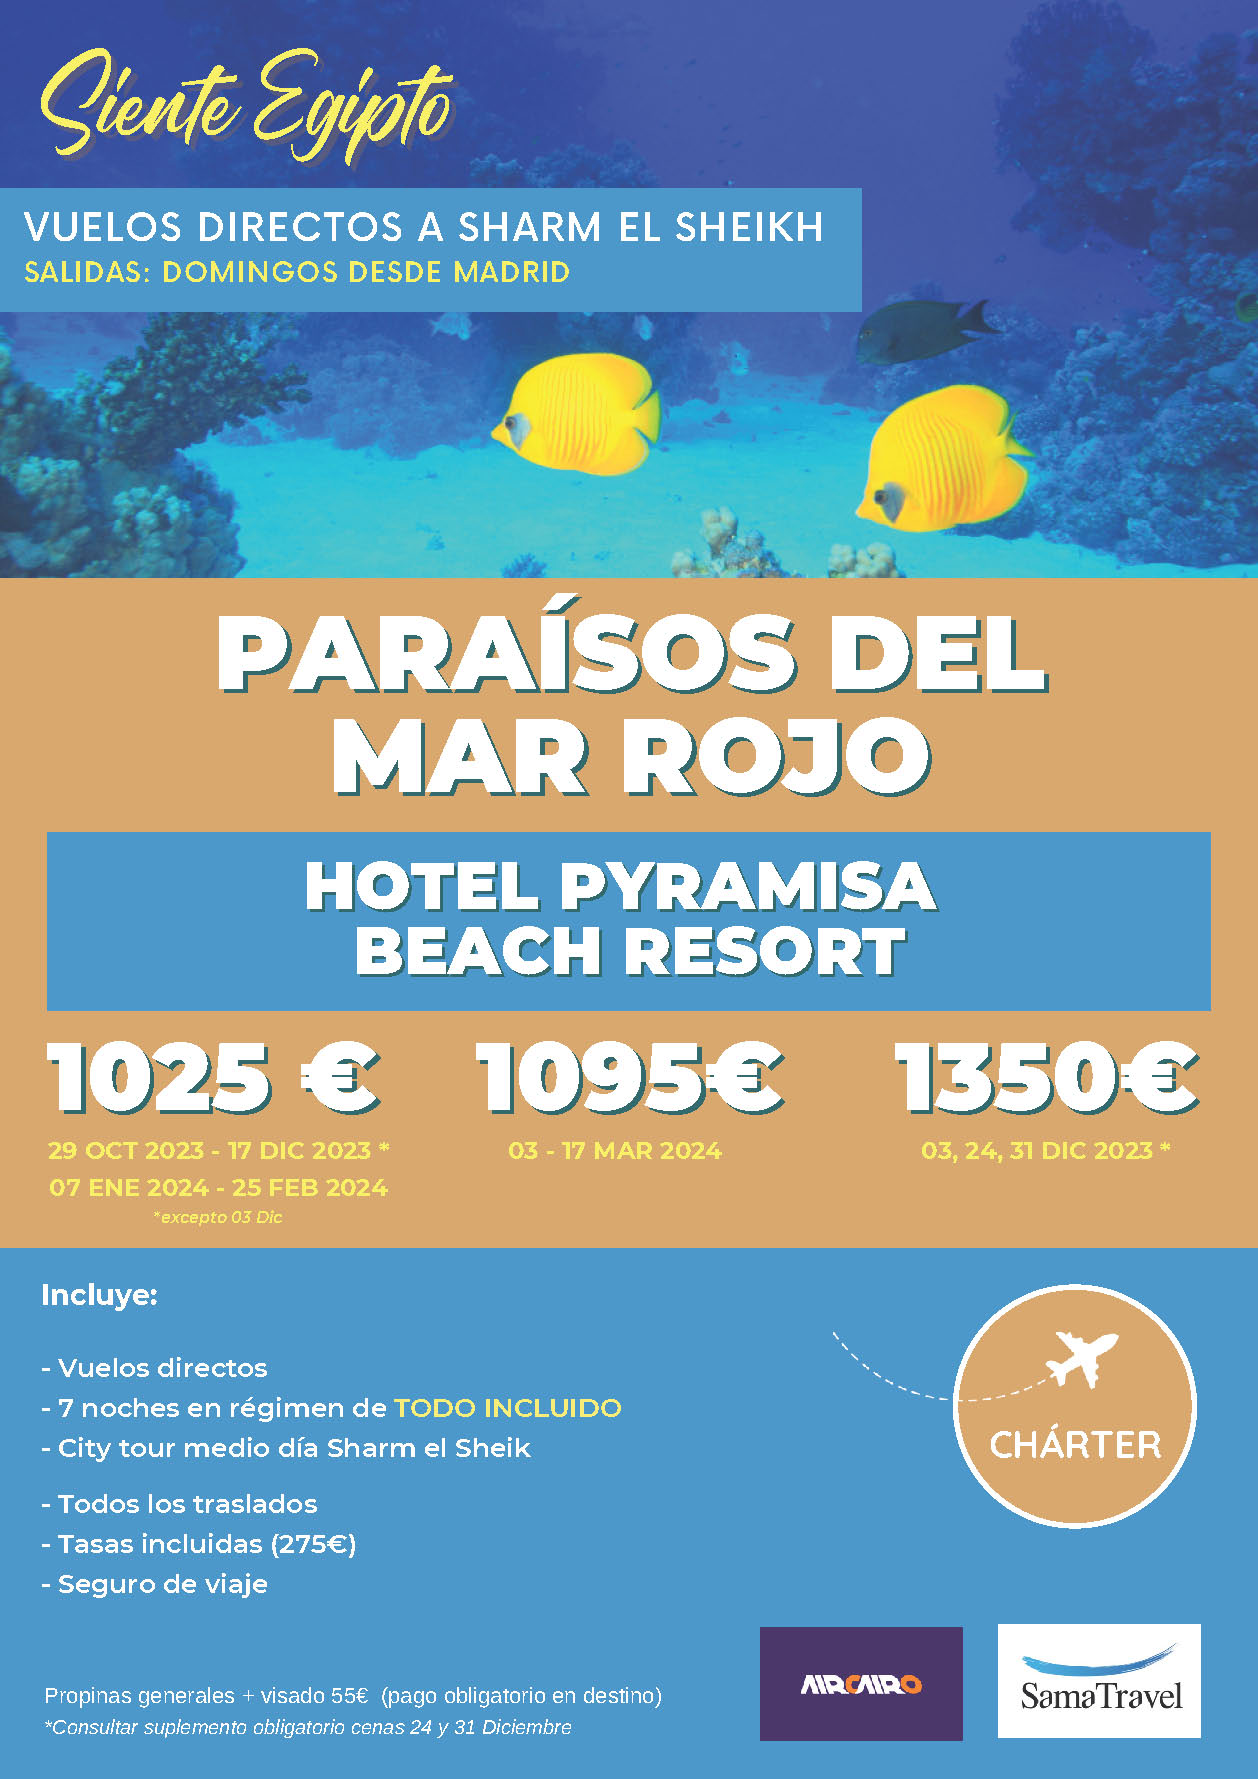 Oferta Sama Travel Egipto Sharm el Sheikh Paraisos del Mar Rojo 8 dias salidas en vuelo especial directo desde Madrid Octubre 2023 a Marzo 2024